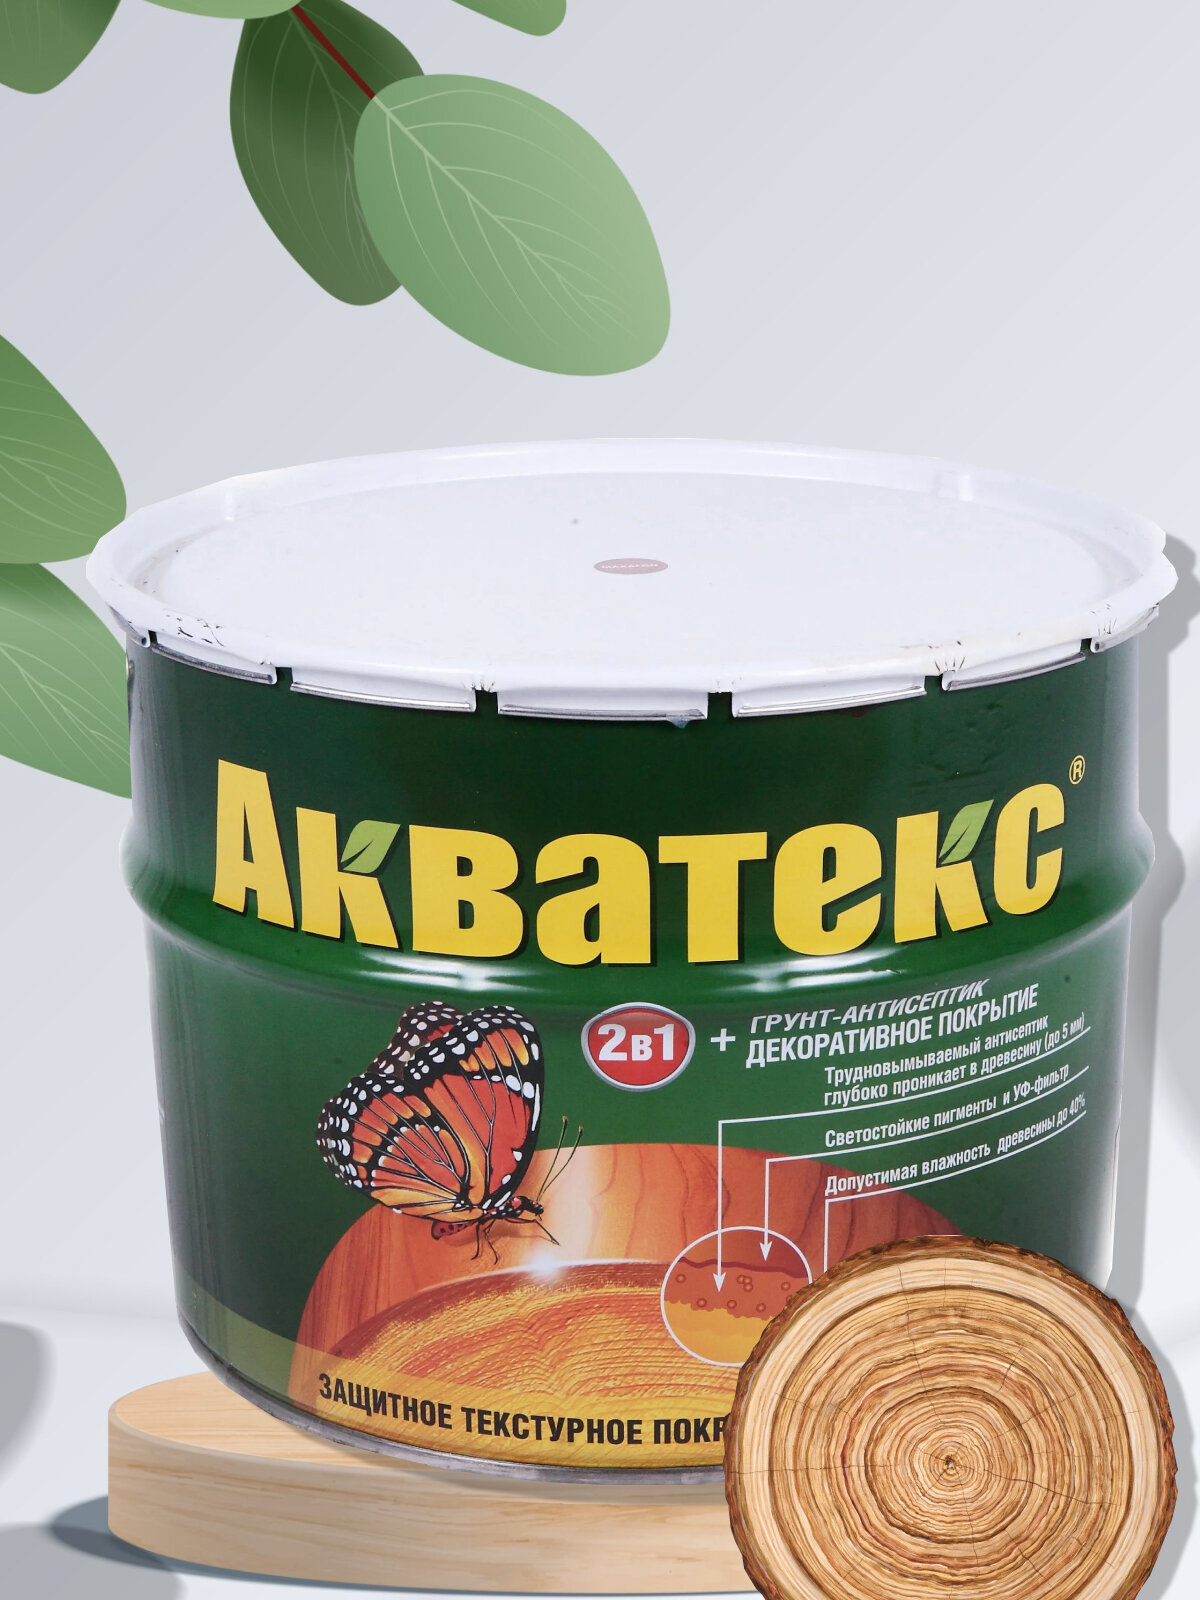 Акватекс" - декоративная пропитка и грунтовка объемом 9 литров, цвет "Бесцветный